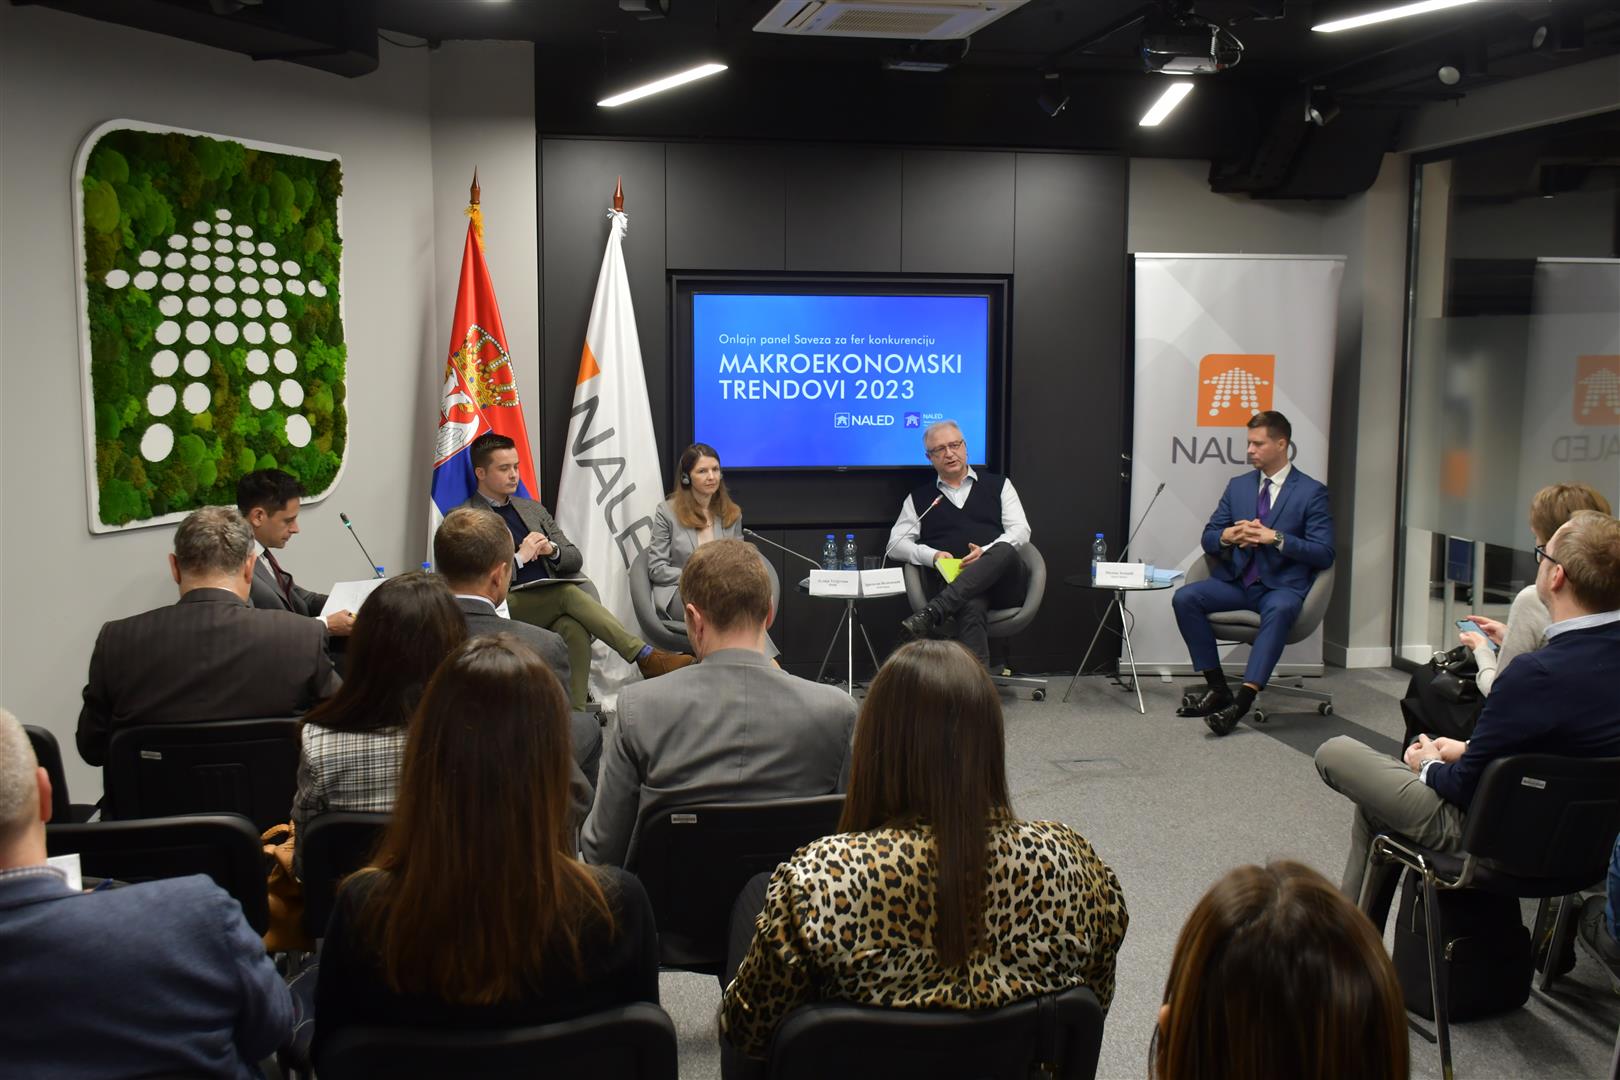 Panel diskusija održana 25. januara 2023. u Beogradu, u organizaciji NALED-a